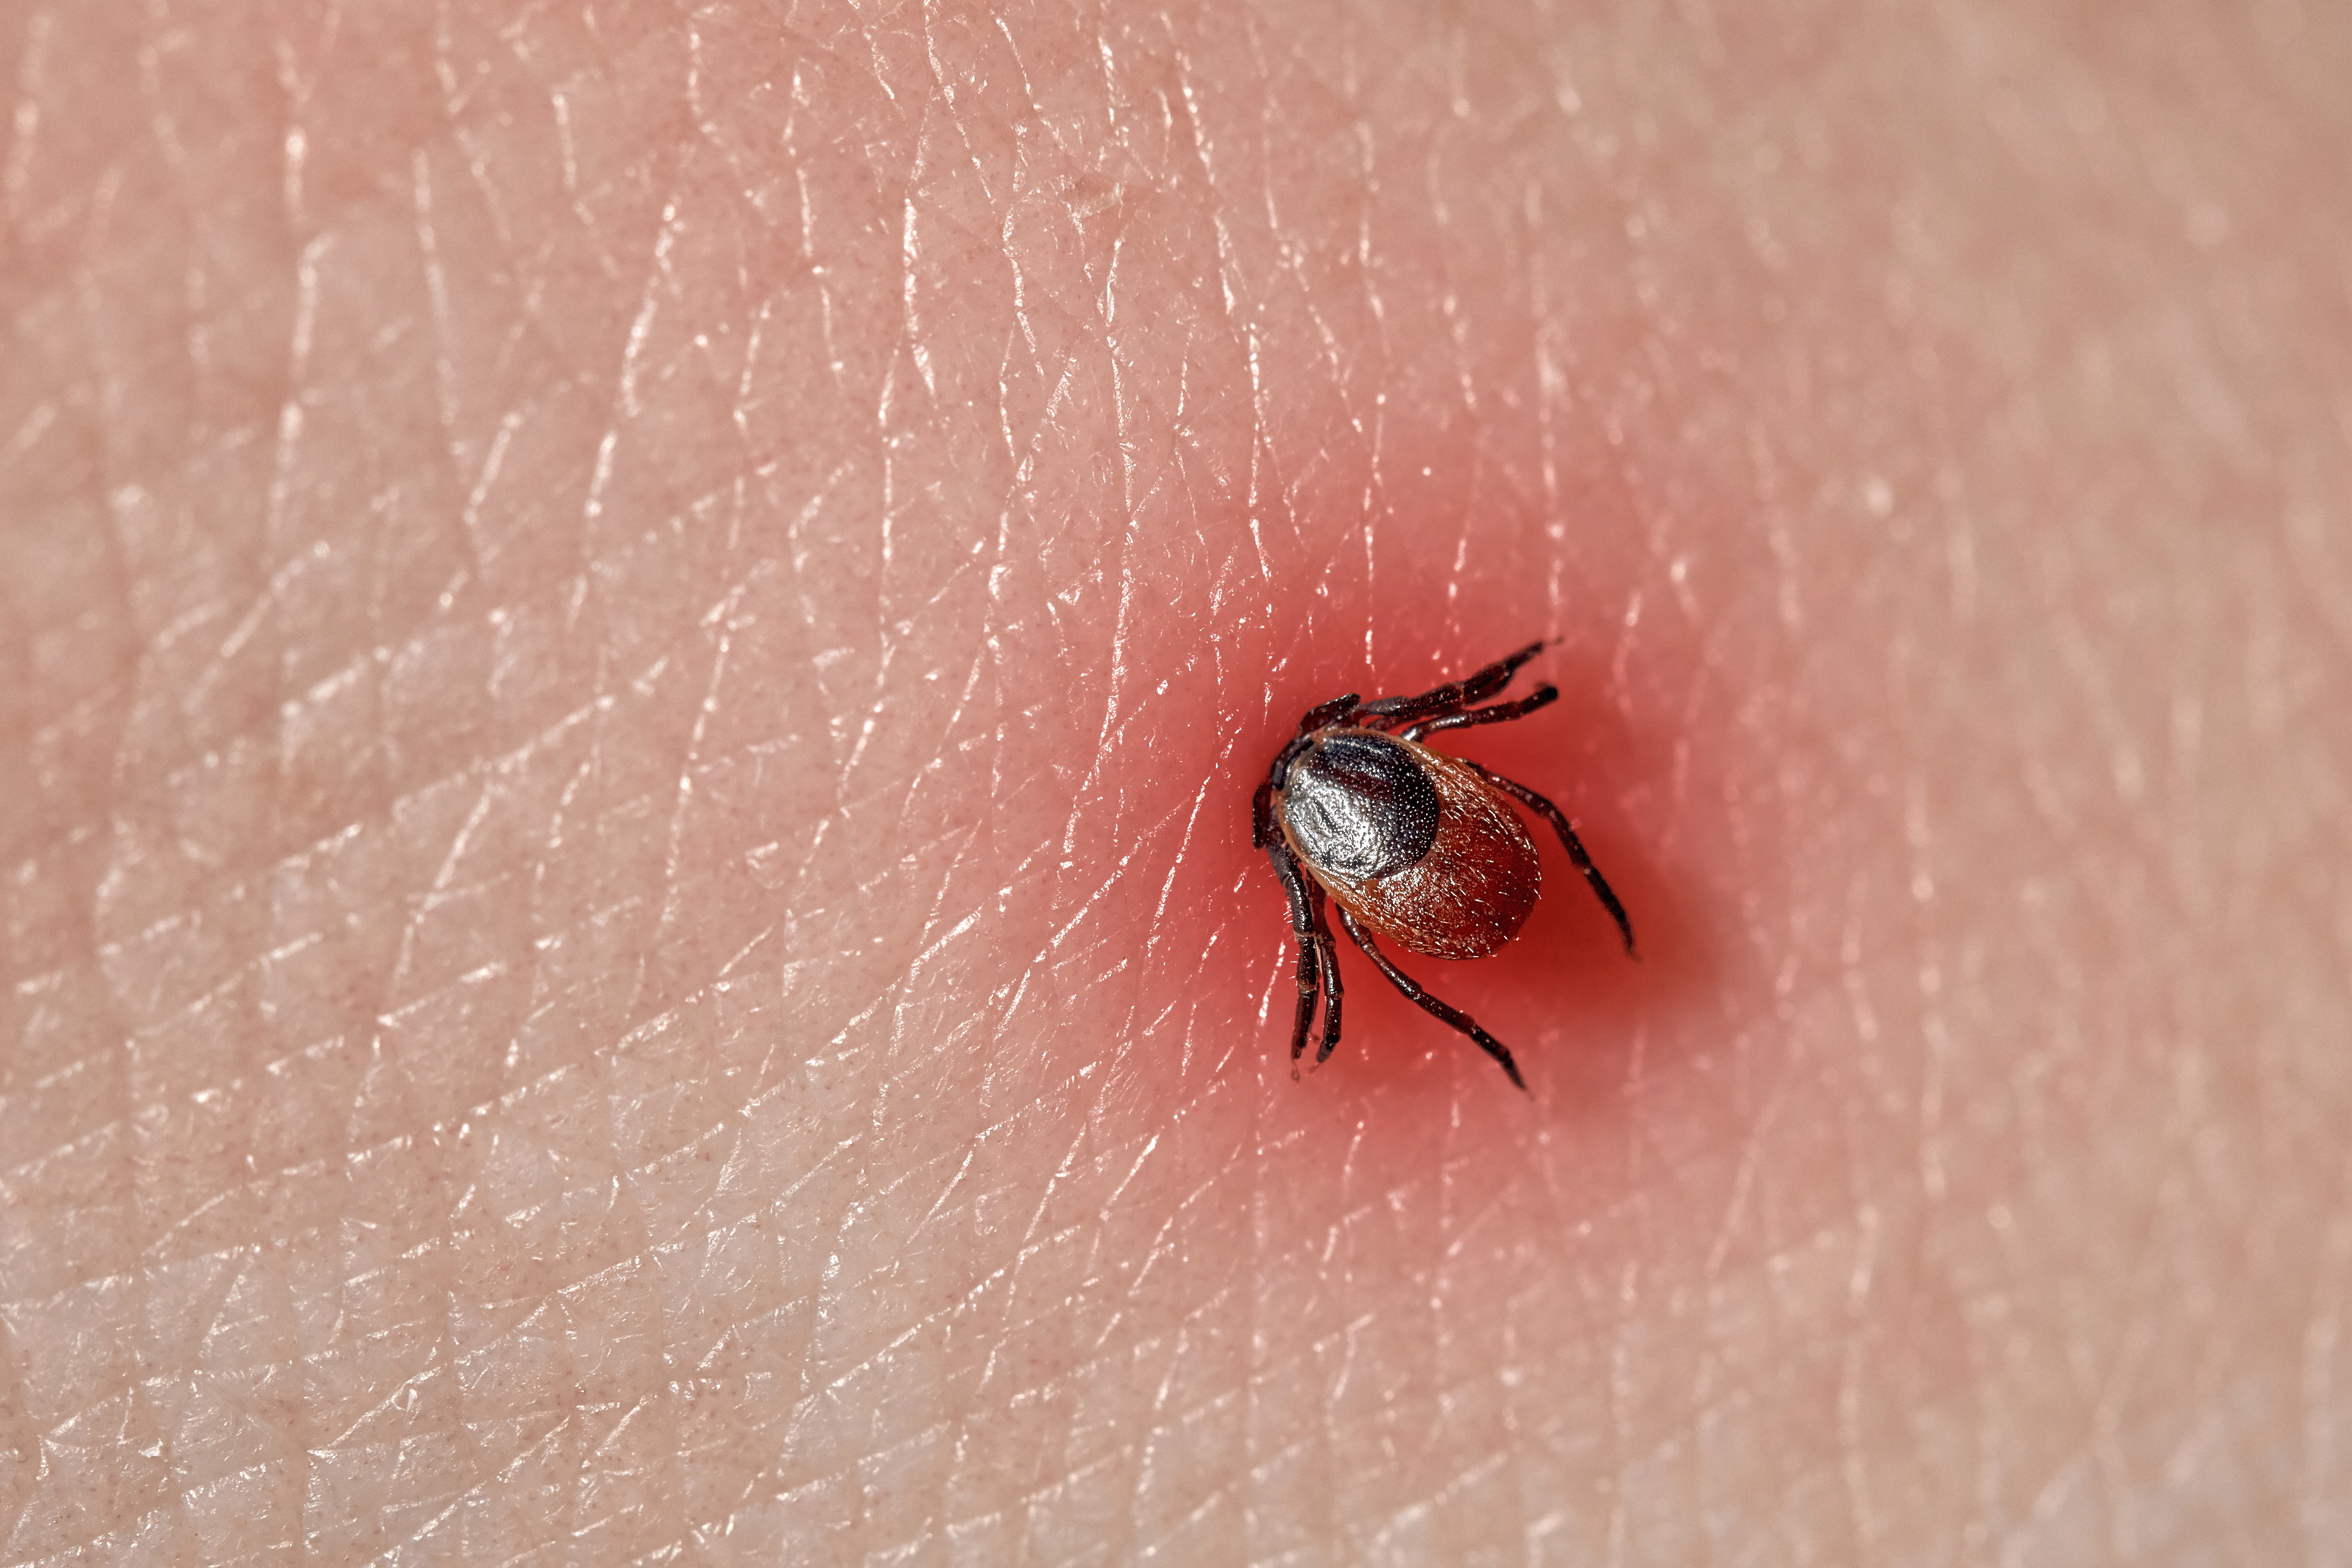 A tick on human skin (istock/PA)